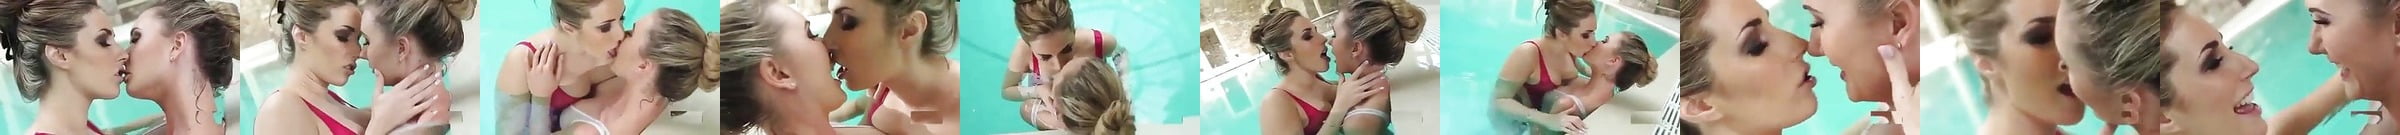 Vidéos Porno Lesbian Swimming Durée Les Meilleures Xhamster